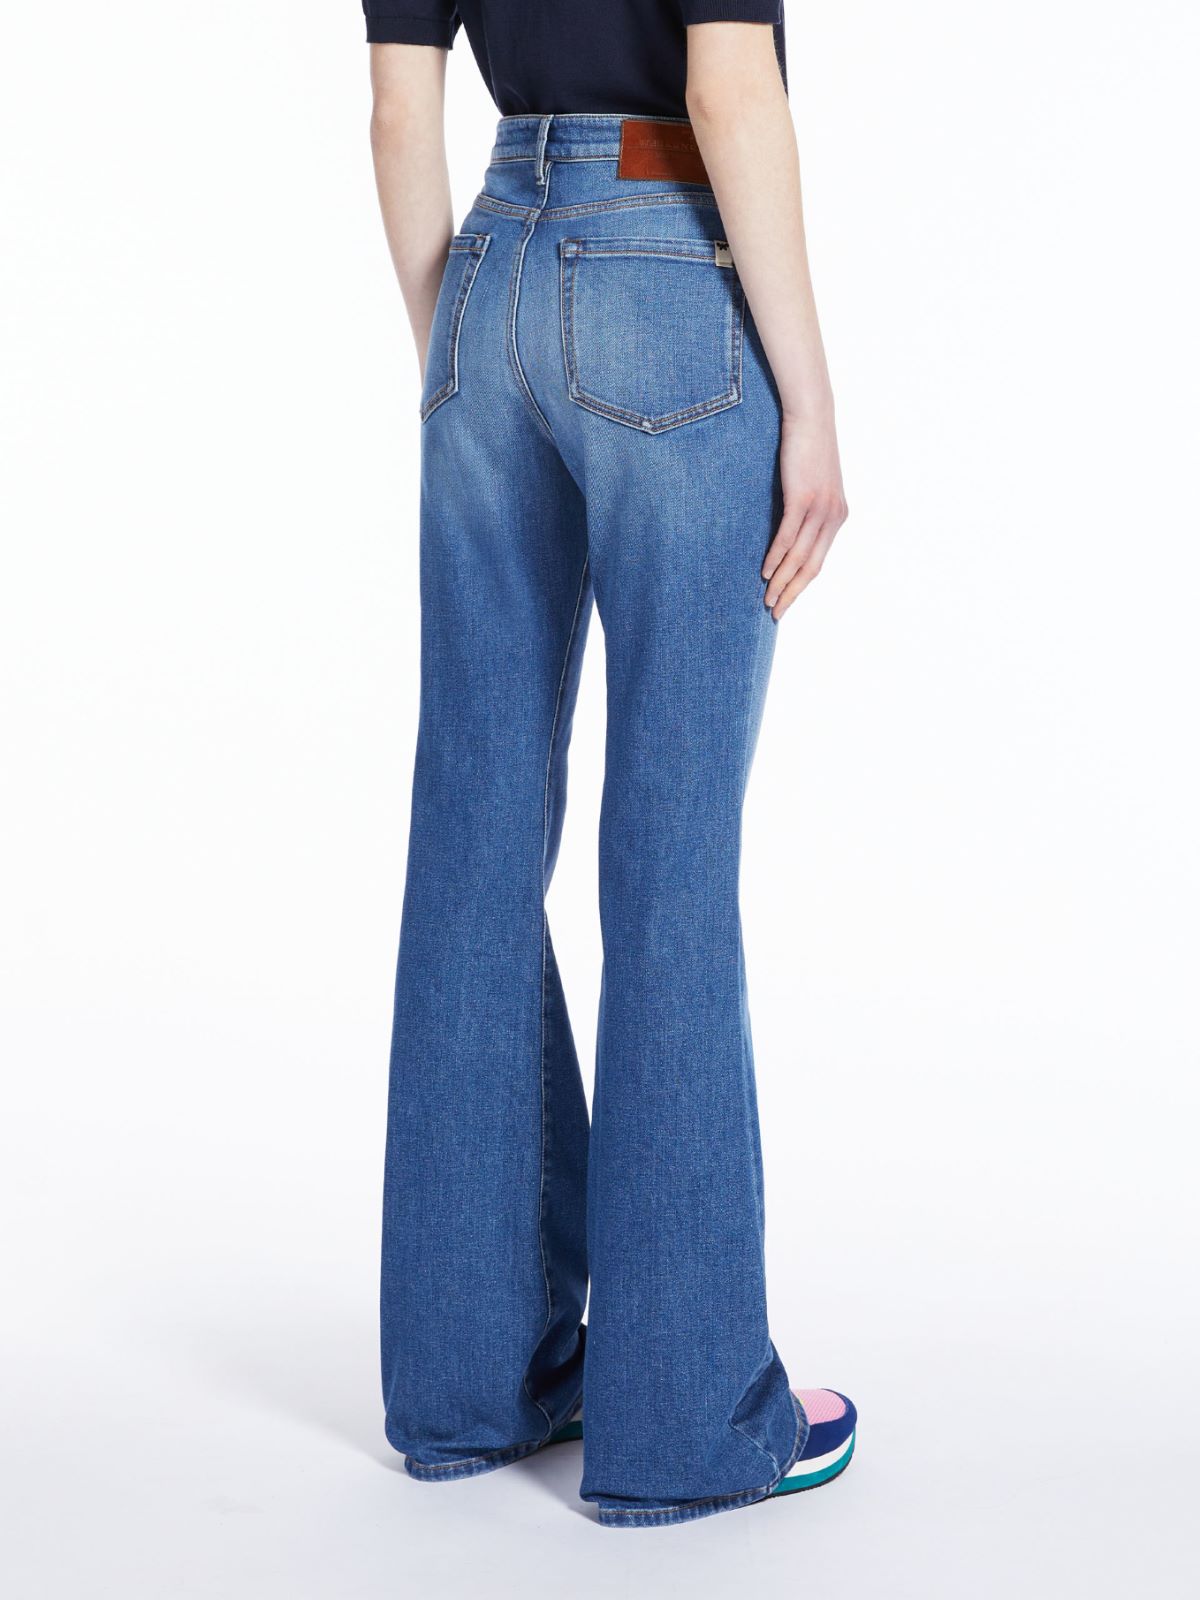 Flared cotton denim jeans - NAVY - Weekend Max Mara - 3